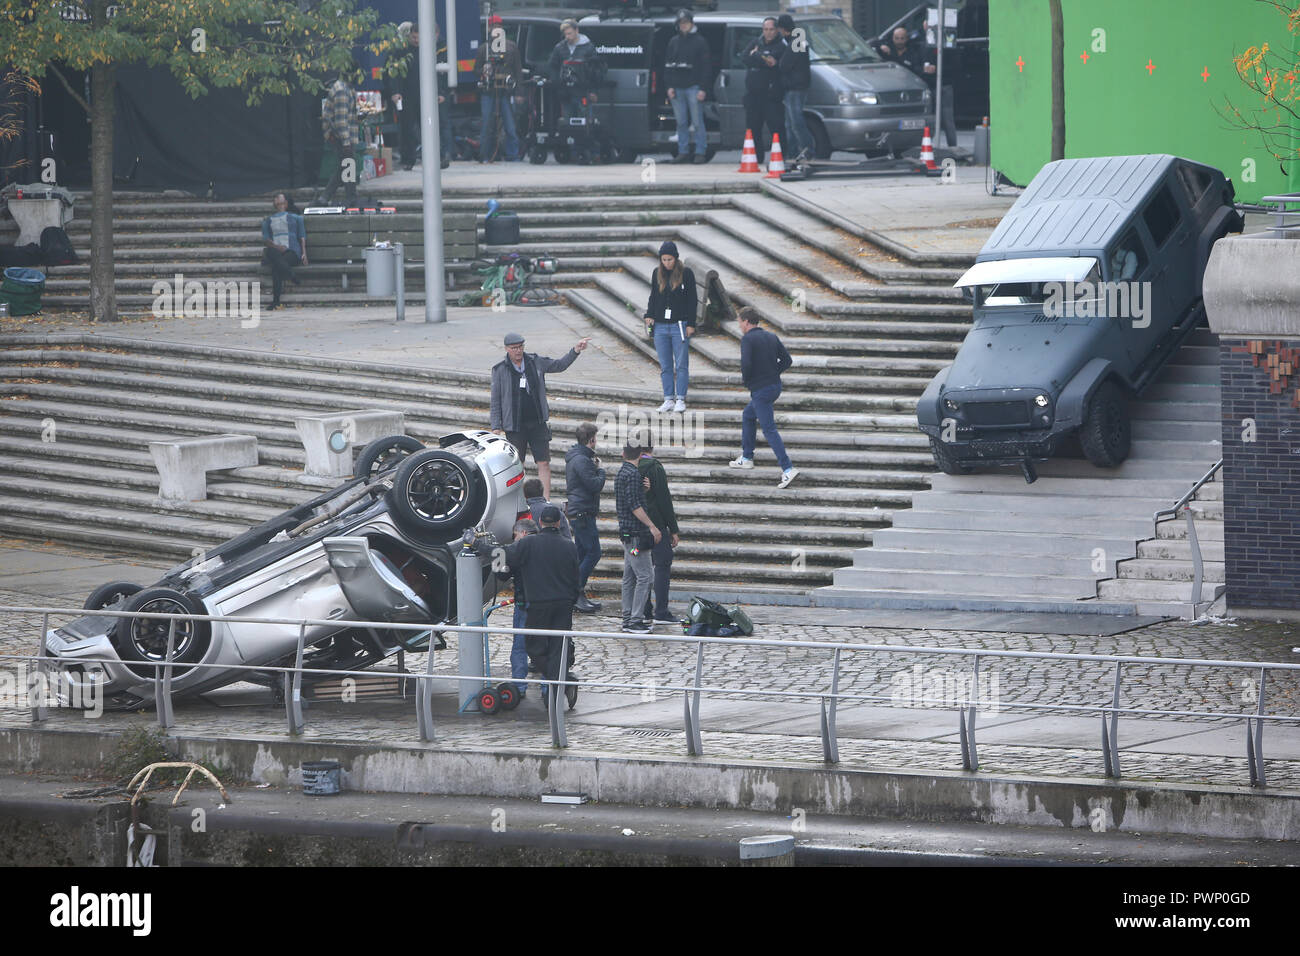 17 ottobre 2018, Amburgo: un auto è sul tetto della Hafencity durante le riprese del film previsto 'tre angeli di Charlie' e viene preparato per una scena di stunt. Foto: Bodo segna/dpa Foto Stock